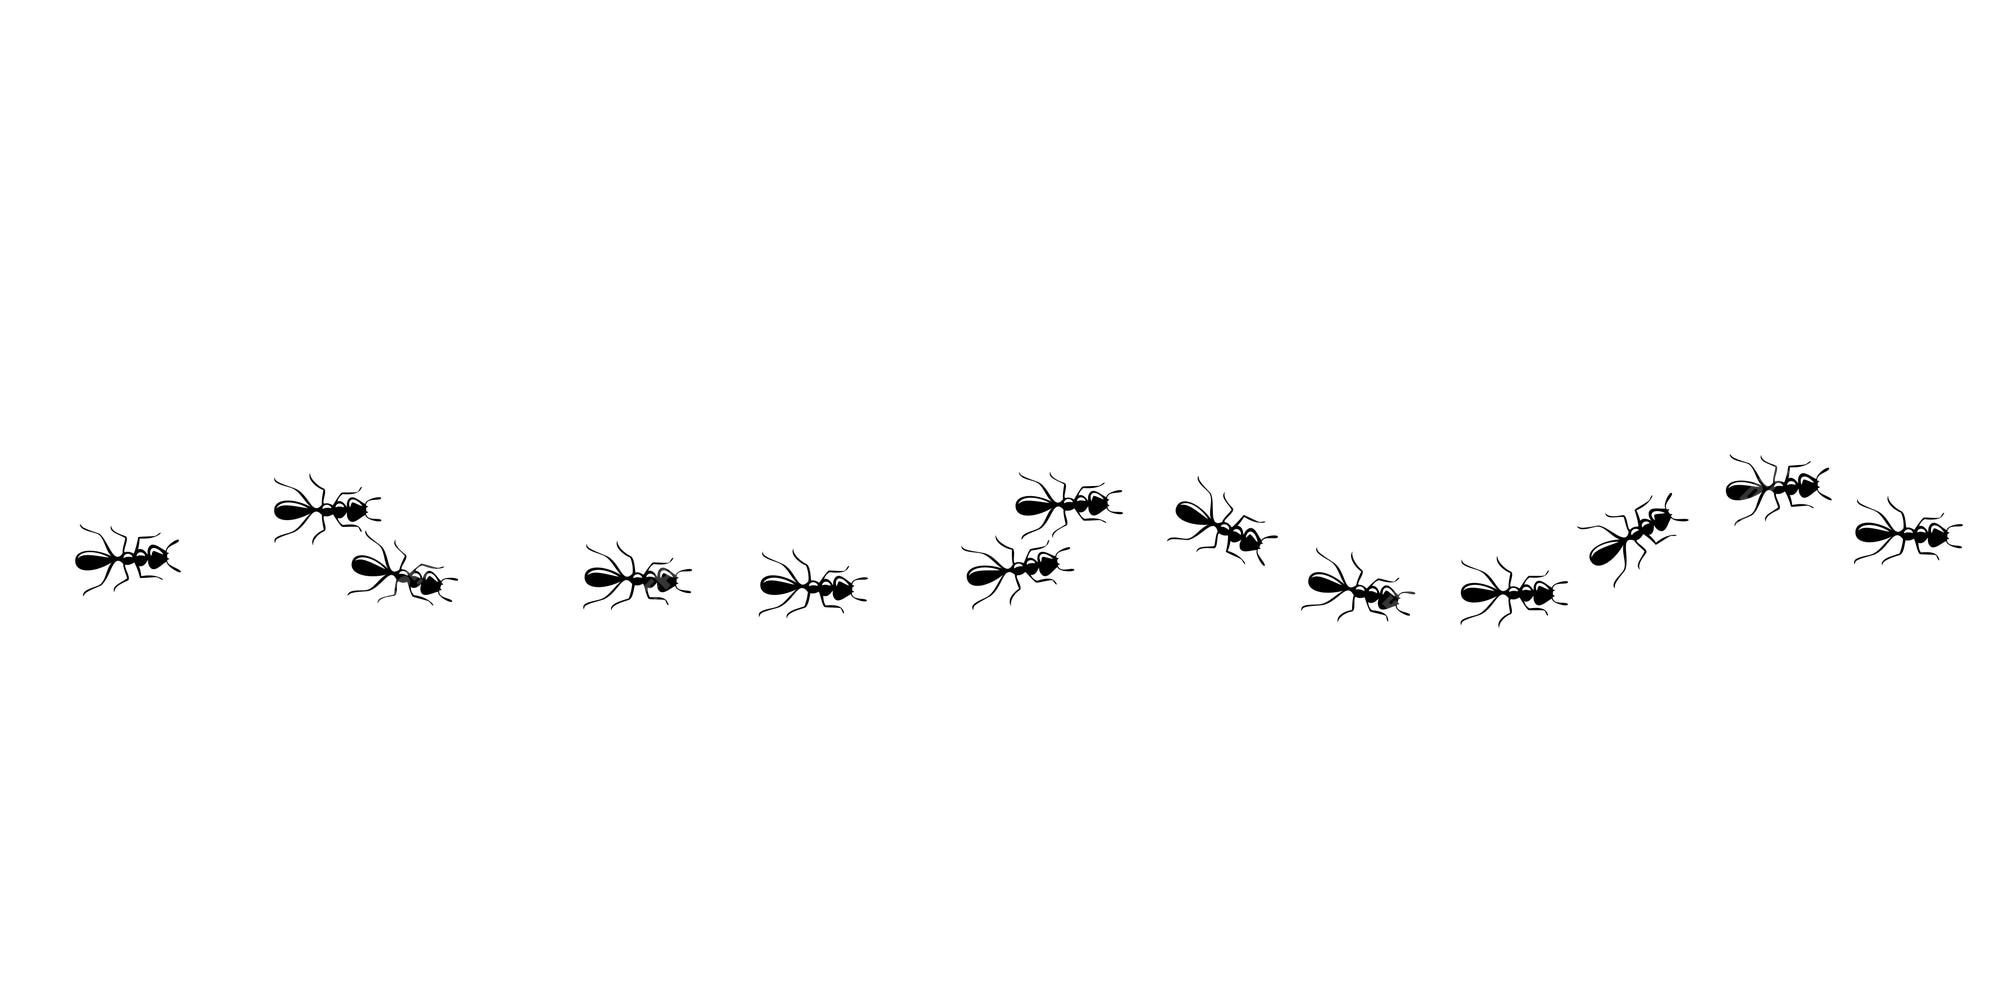 Padrão Sem Emenda De Trilha De Formigas Caminho De Formiga Isolado No Fundo Branco Ilustração 2880